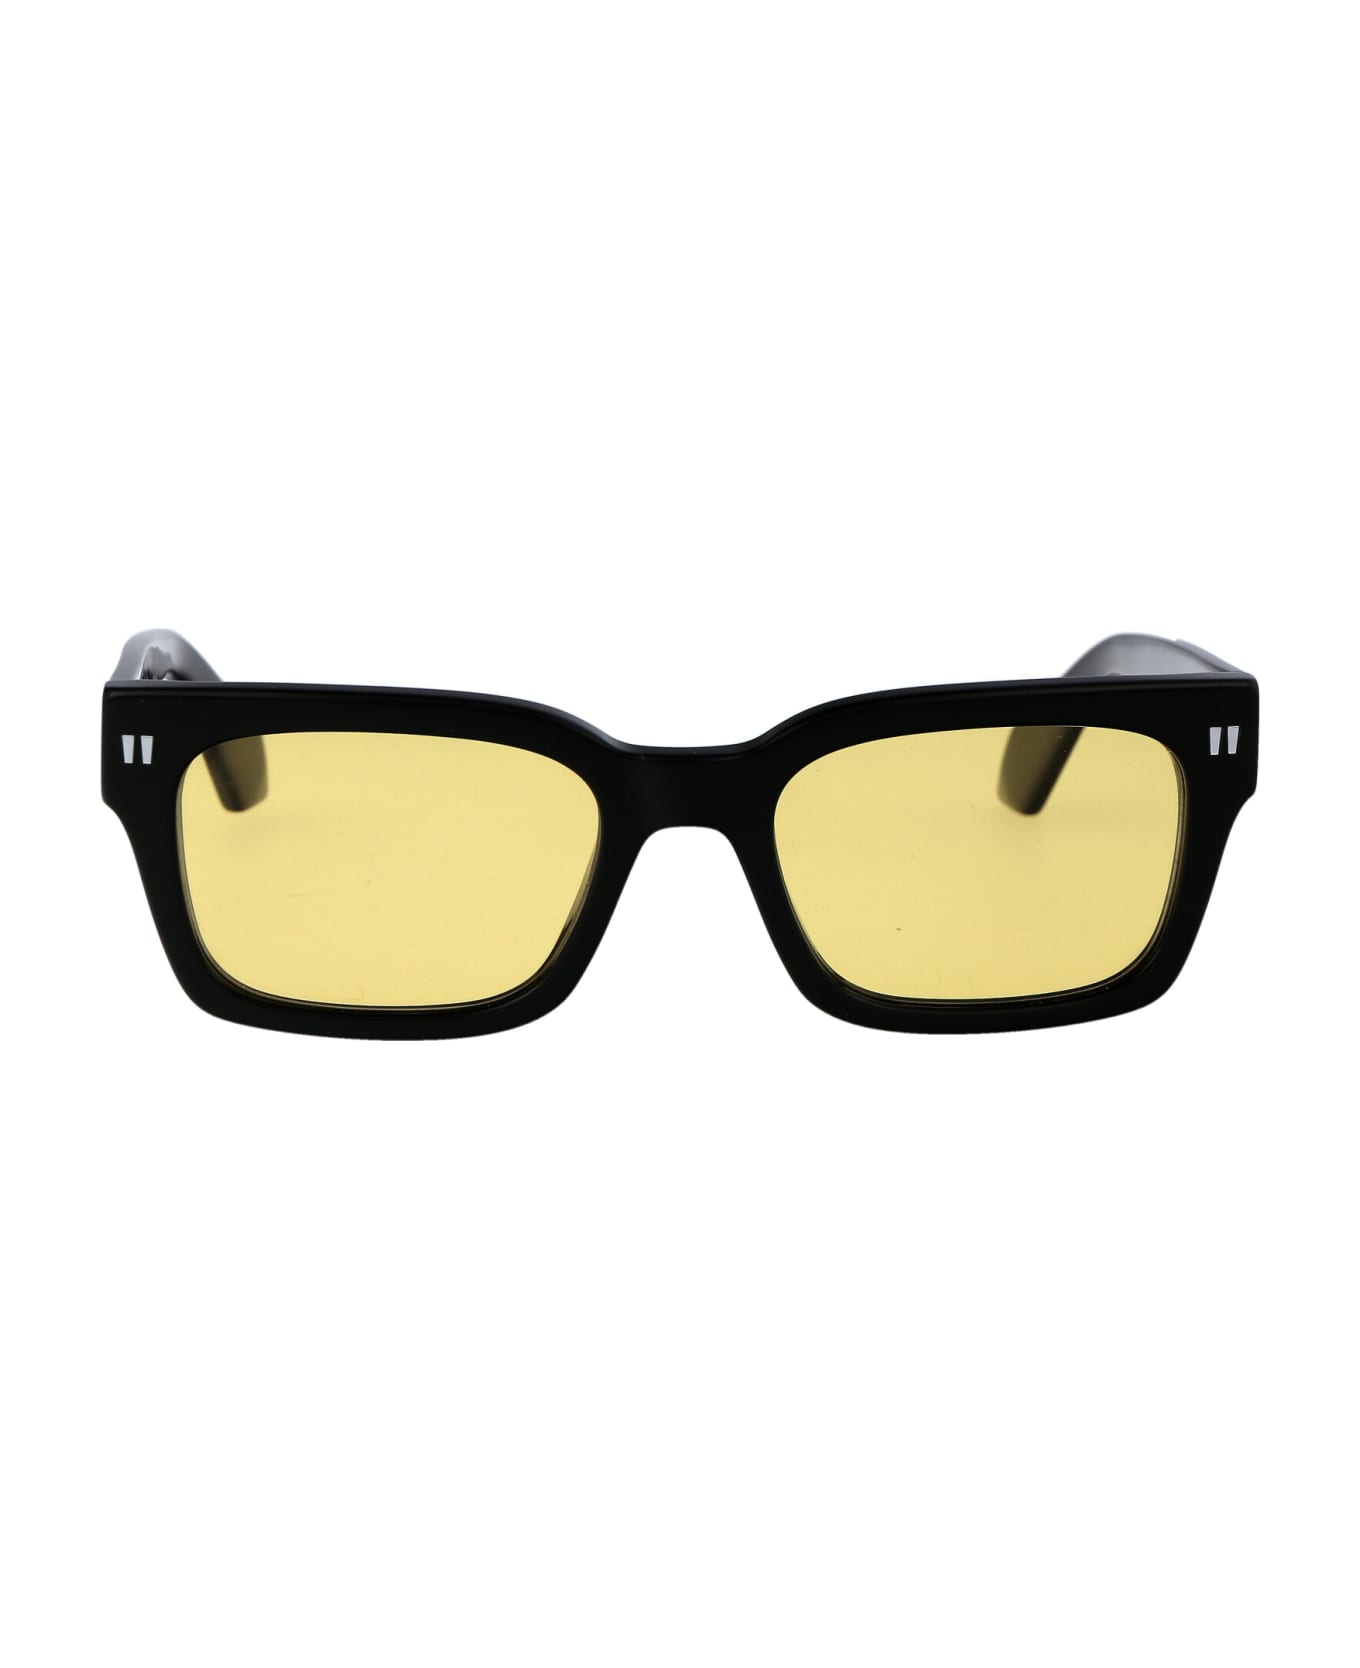 Off-White Midland Sunglasses - 1018 BLACK